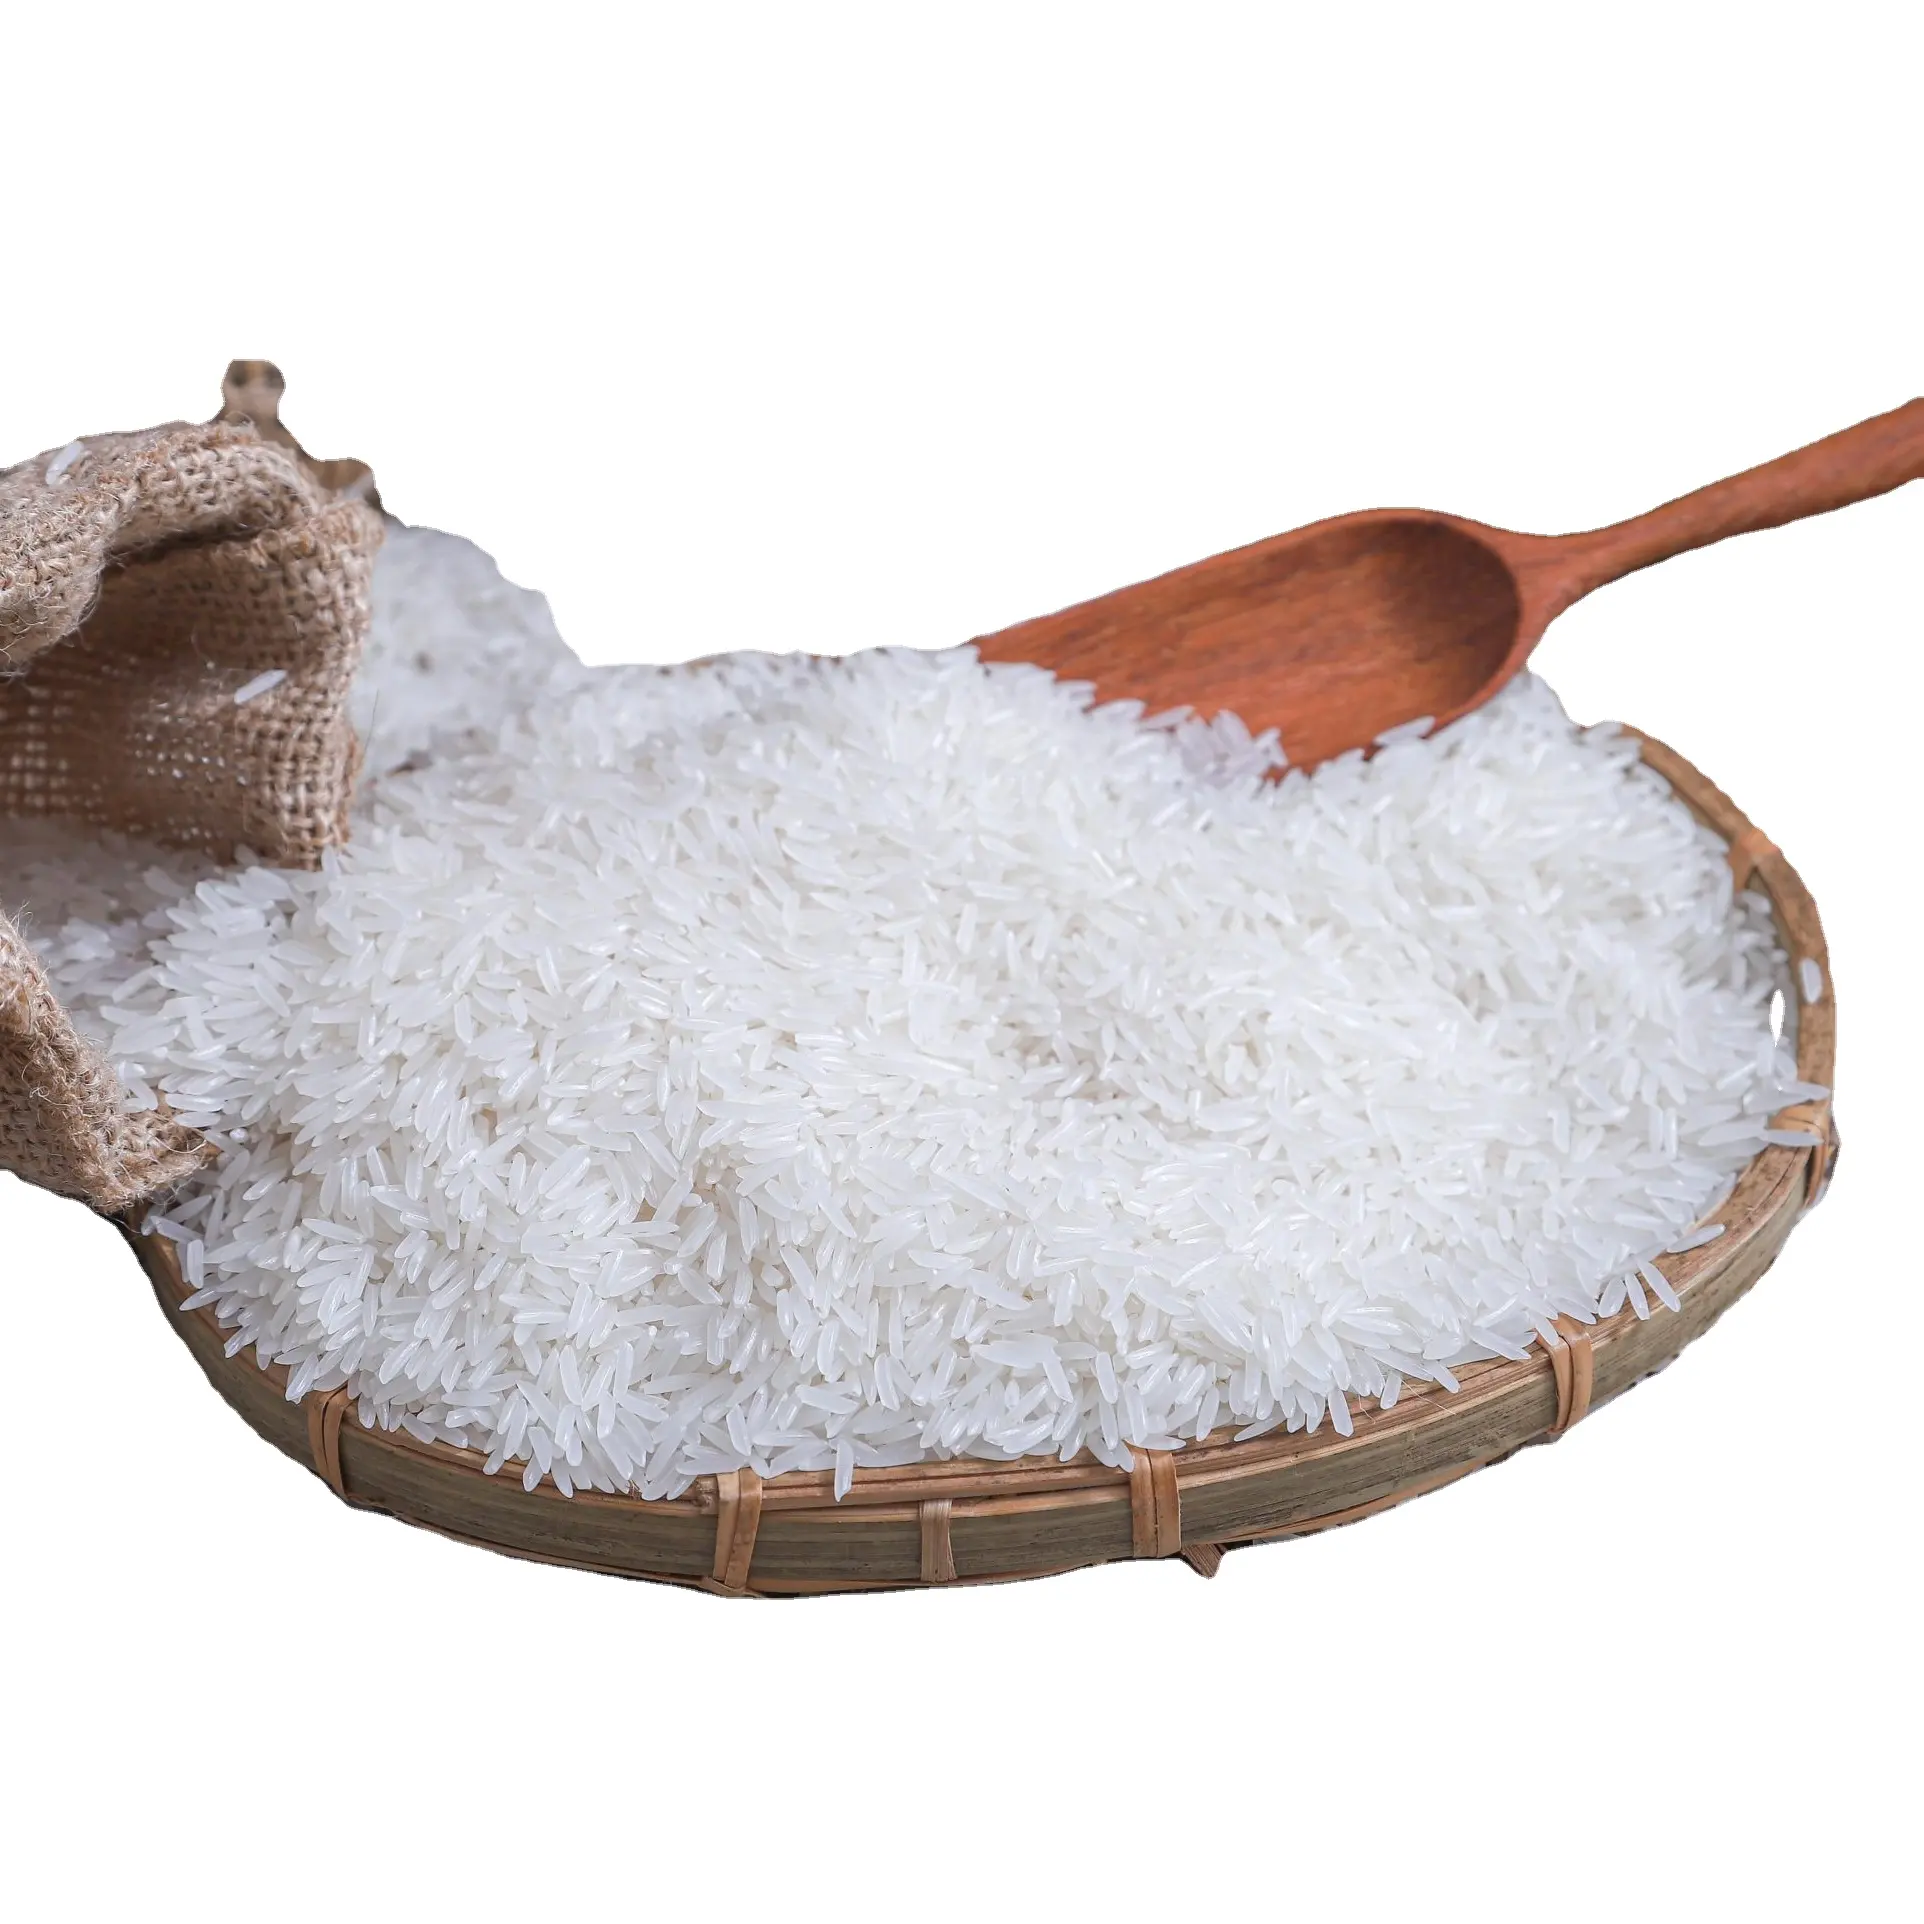 Jasmin Reis Preis Großhandel Langkorn Duftender Reis Weißer Reis Samen unver wechselbarer blumiger Geschmack-whatsap